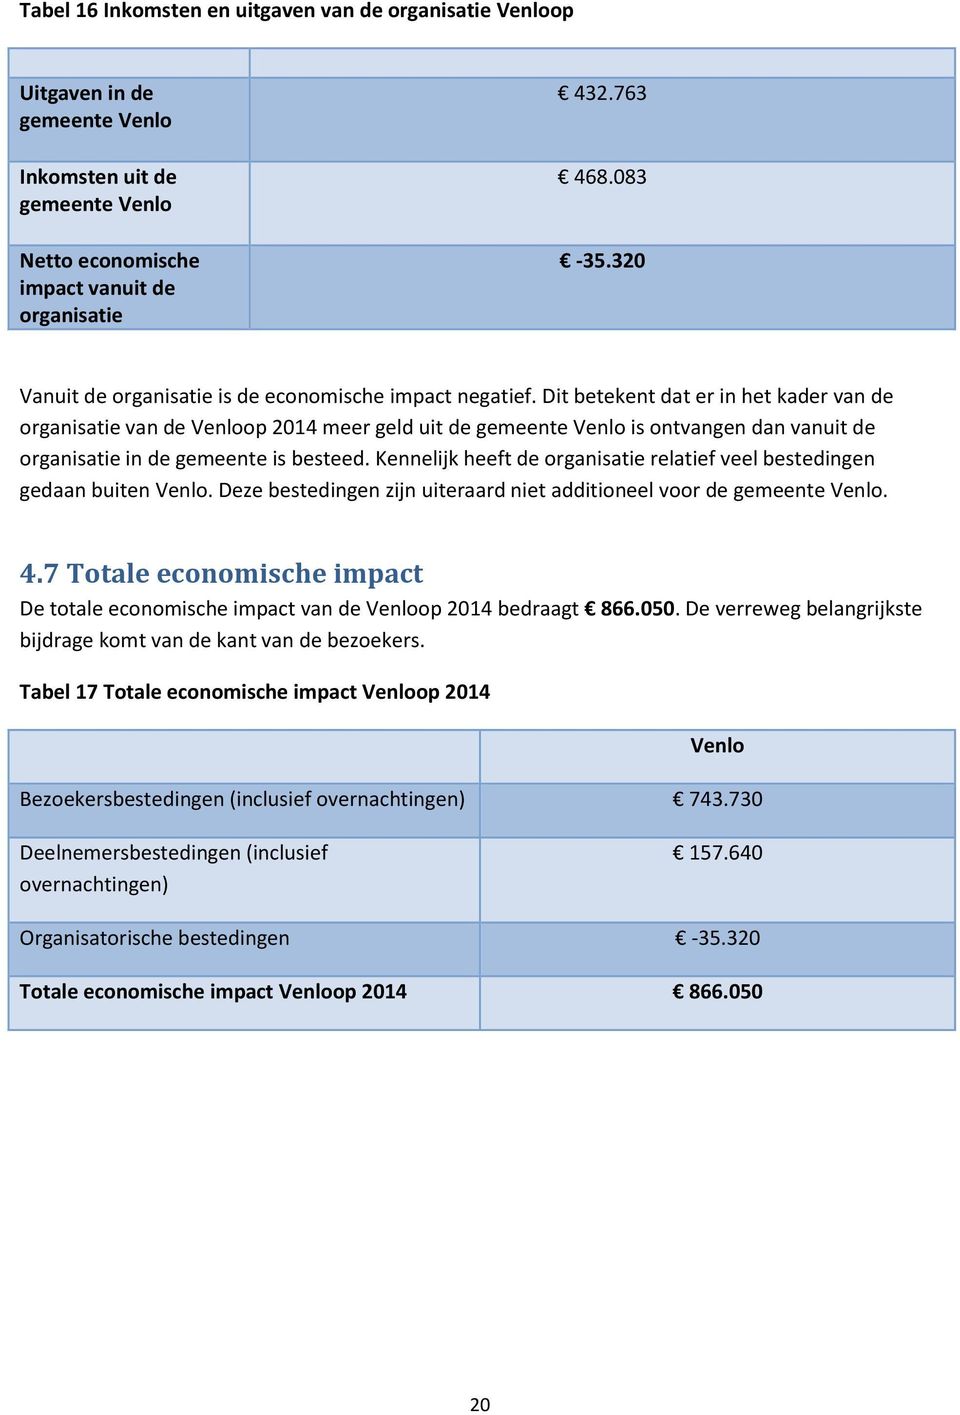 Dit betekent dat er in het kader van de organisatie van de Venloop 2014 meer geld uit de gemeente Venlo is ontvangen dan vanuit de organisatie in de gemeente is besteed.